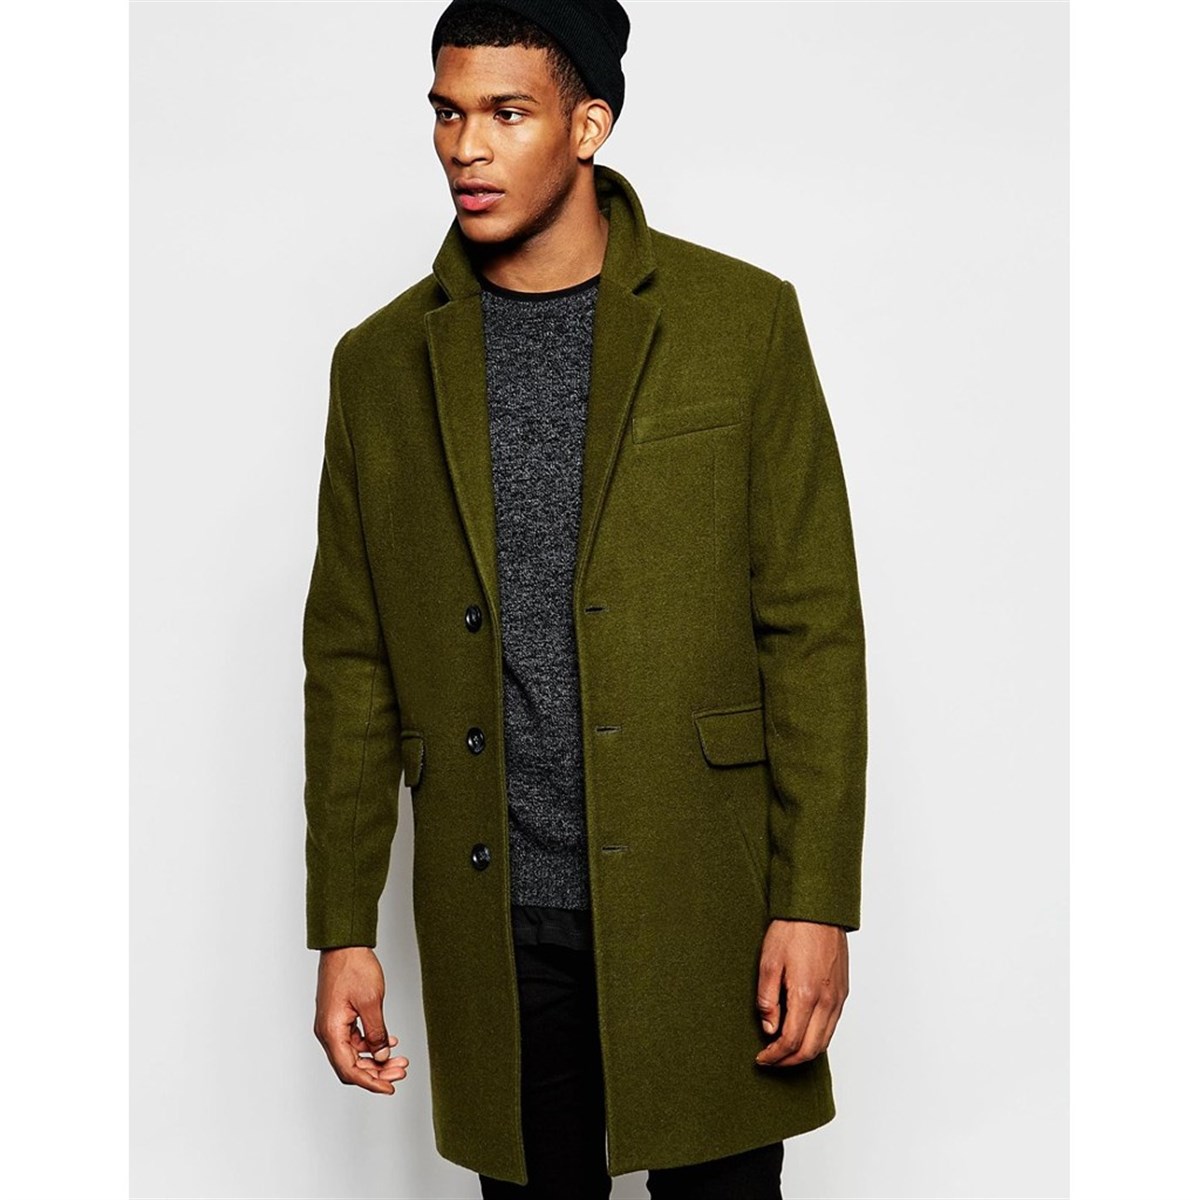 Зеленое мужское пальто. Мужское пальто woolen Coat. Полупальто мужское Mango man. Maag пальто мужское зеленое. Пальто хаки ASOS мужское.